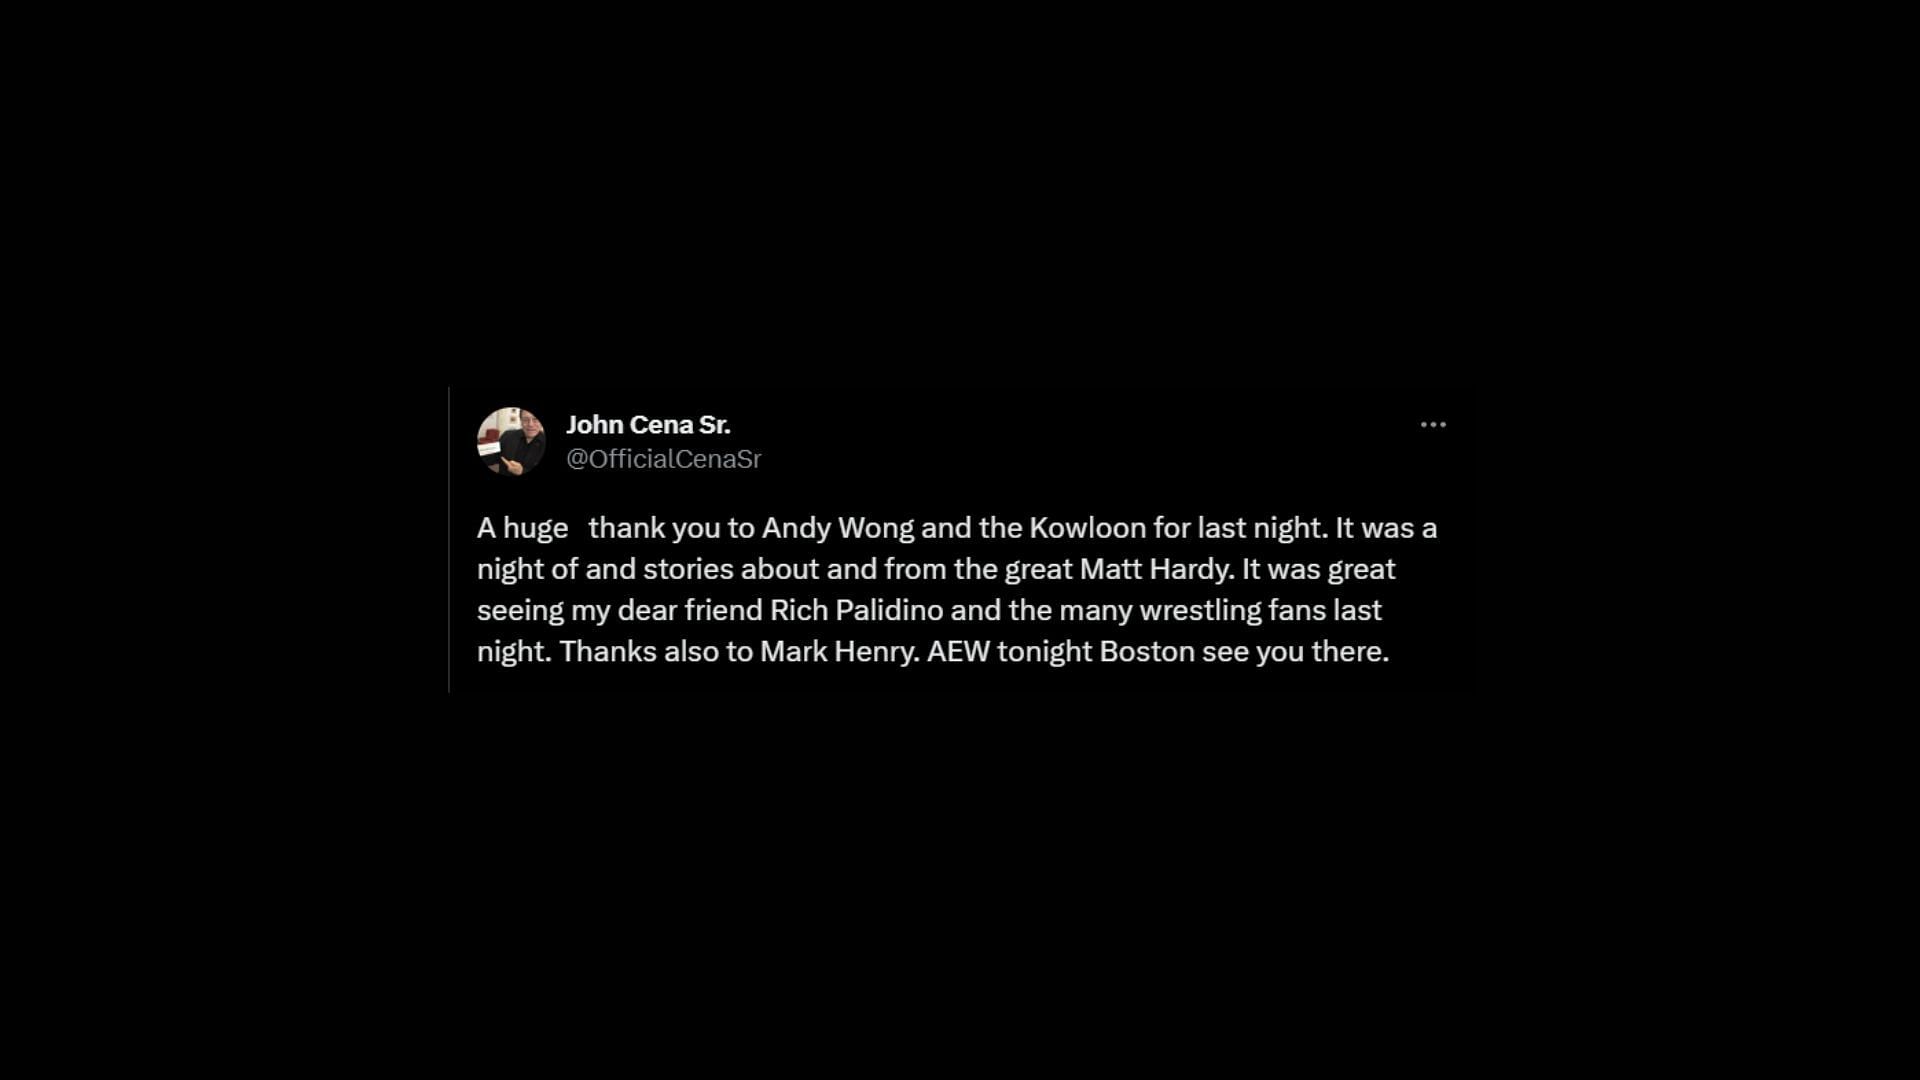 John Cena Sr.&#039;s recent post on Twitter